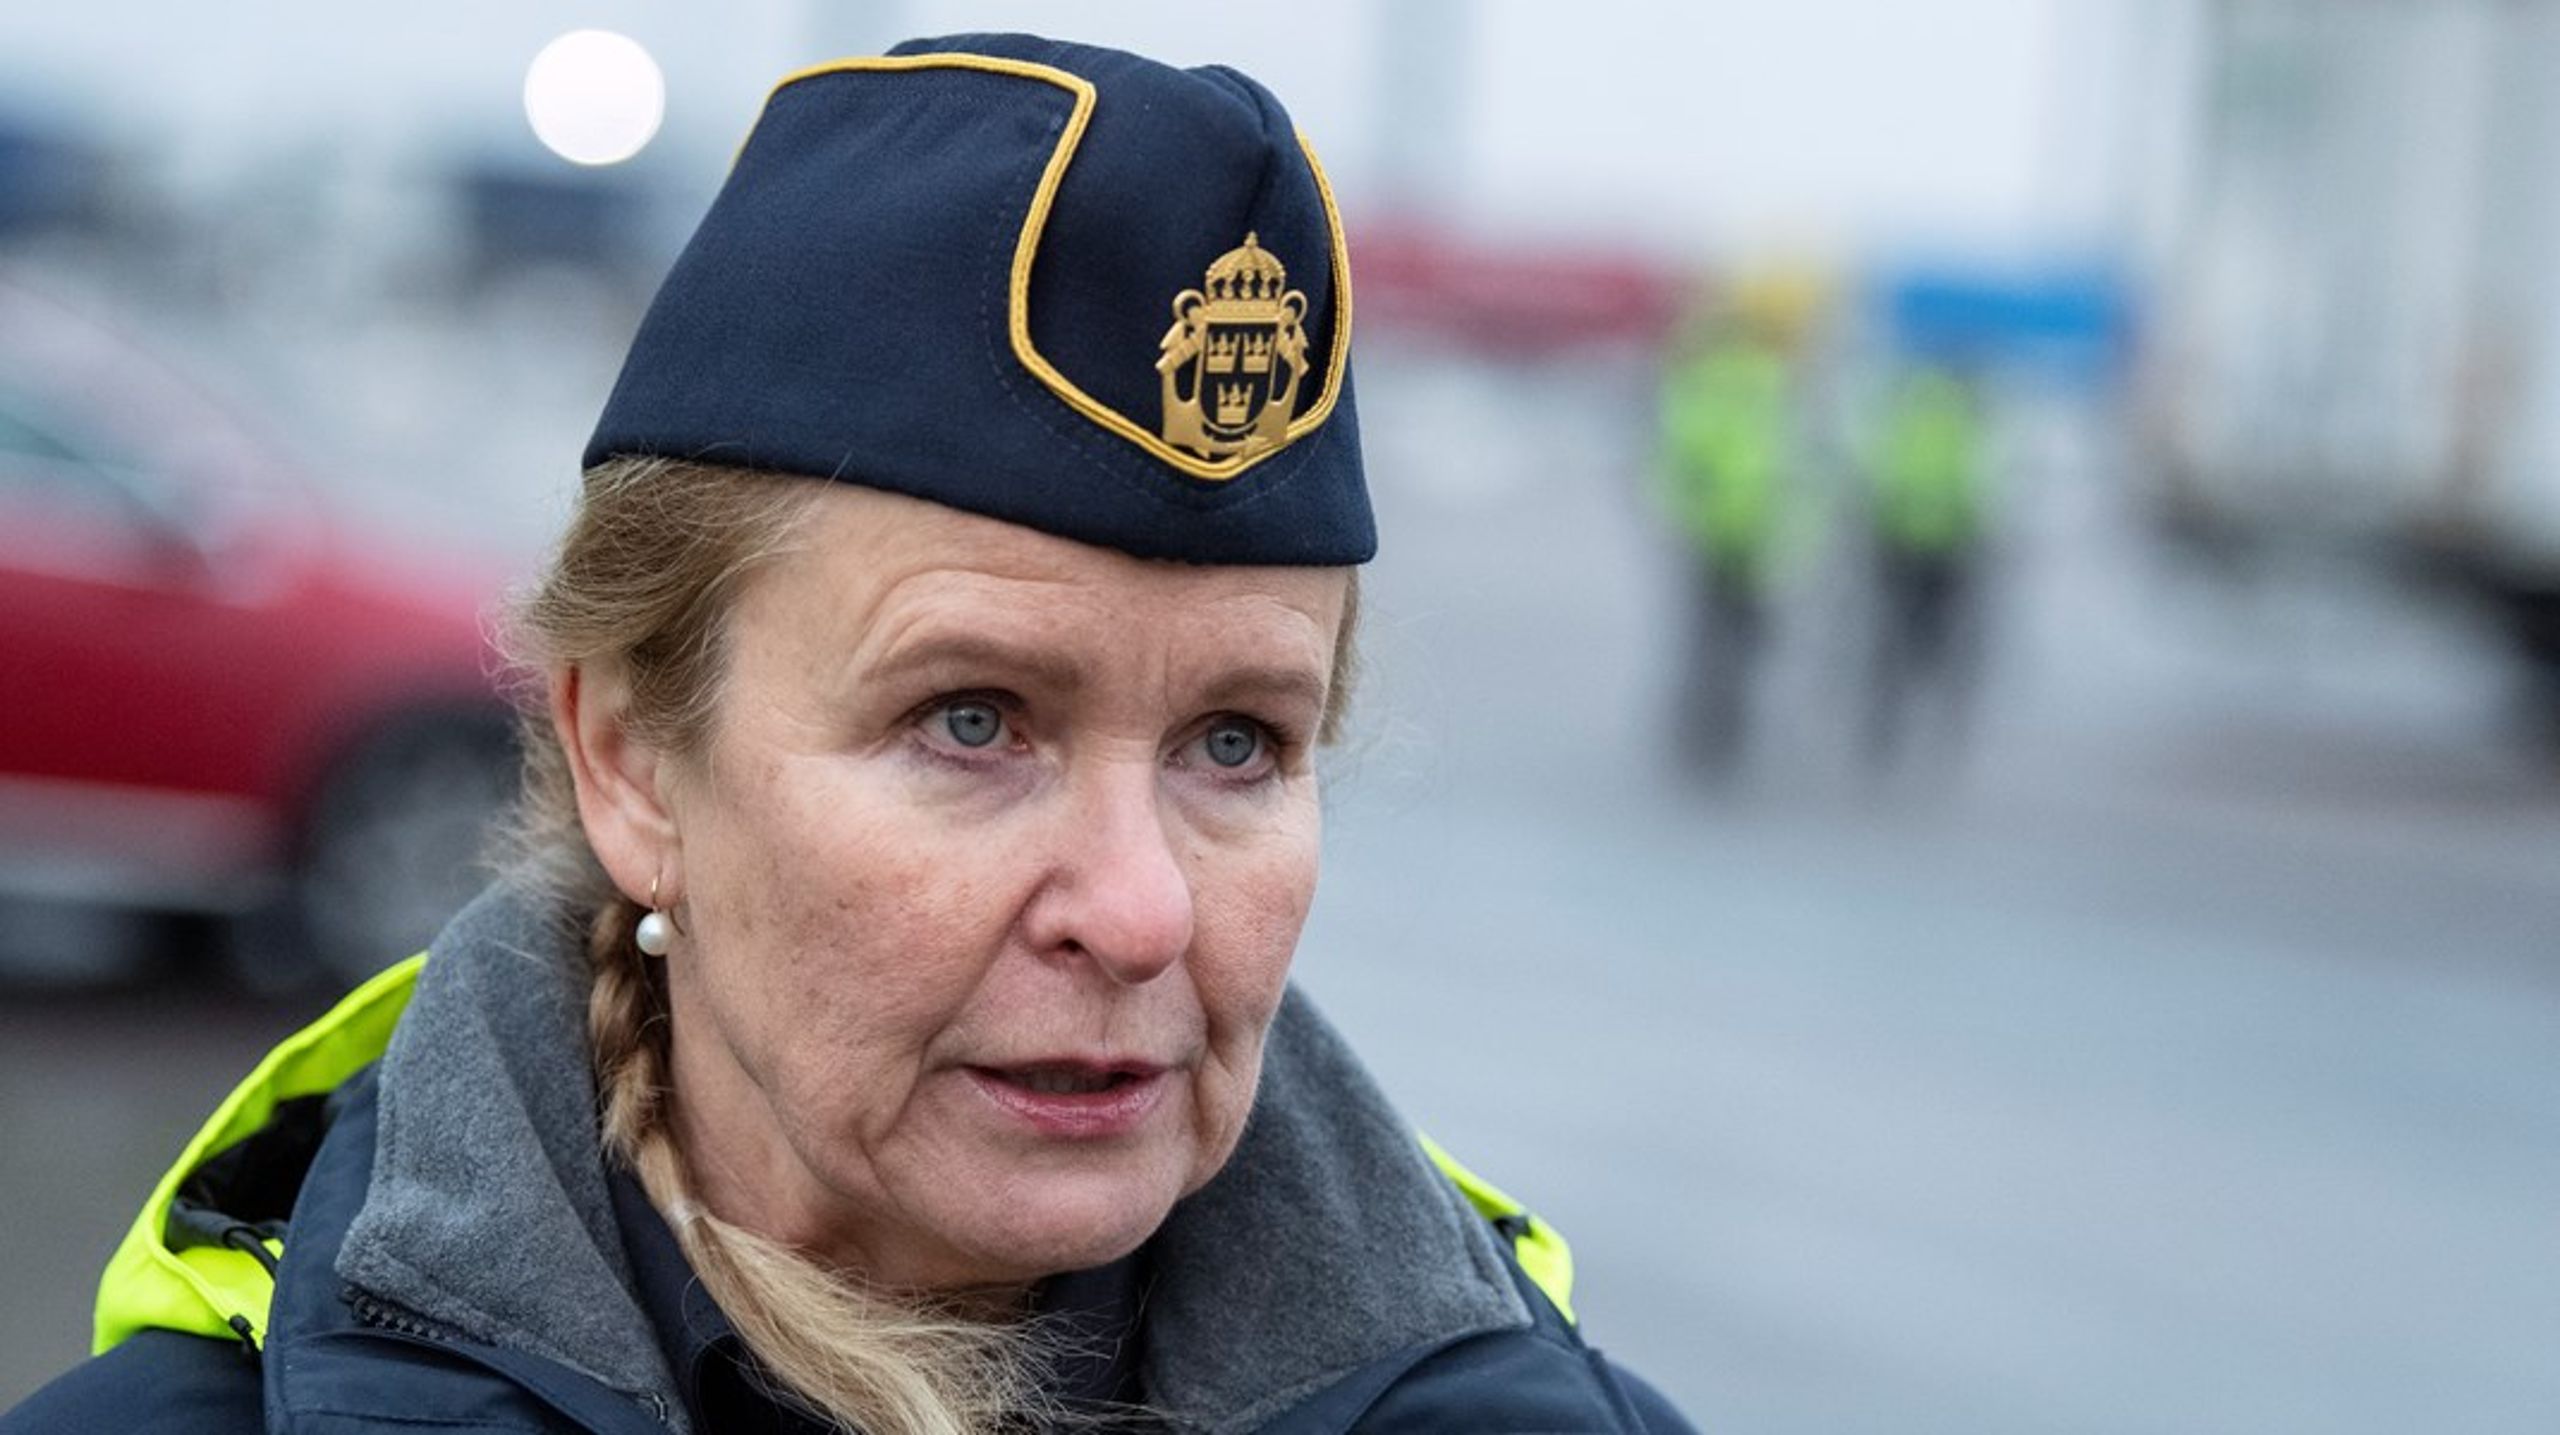 "Myndigheten har varit underbemannad länge, men nu börjar det bli akut" säger Kustbevakningens generaldirektör Therese Mattsson.<br><br>